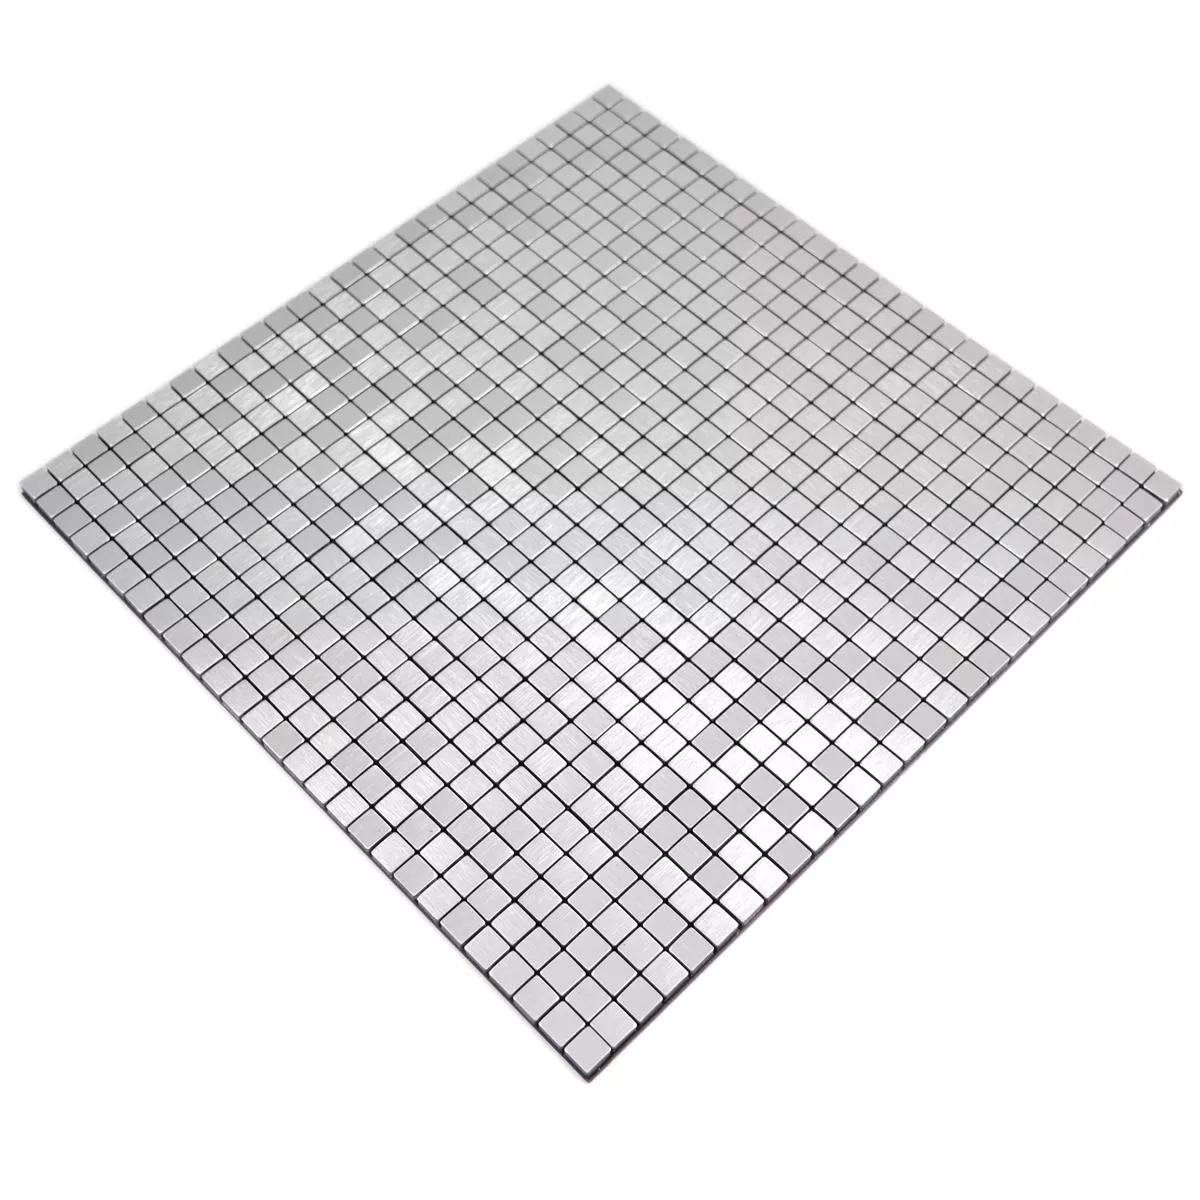 Prov Metall Mosaik Wygon Självhäftande Silver 